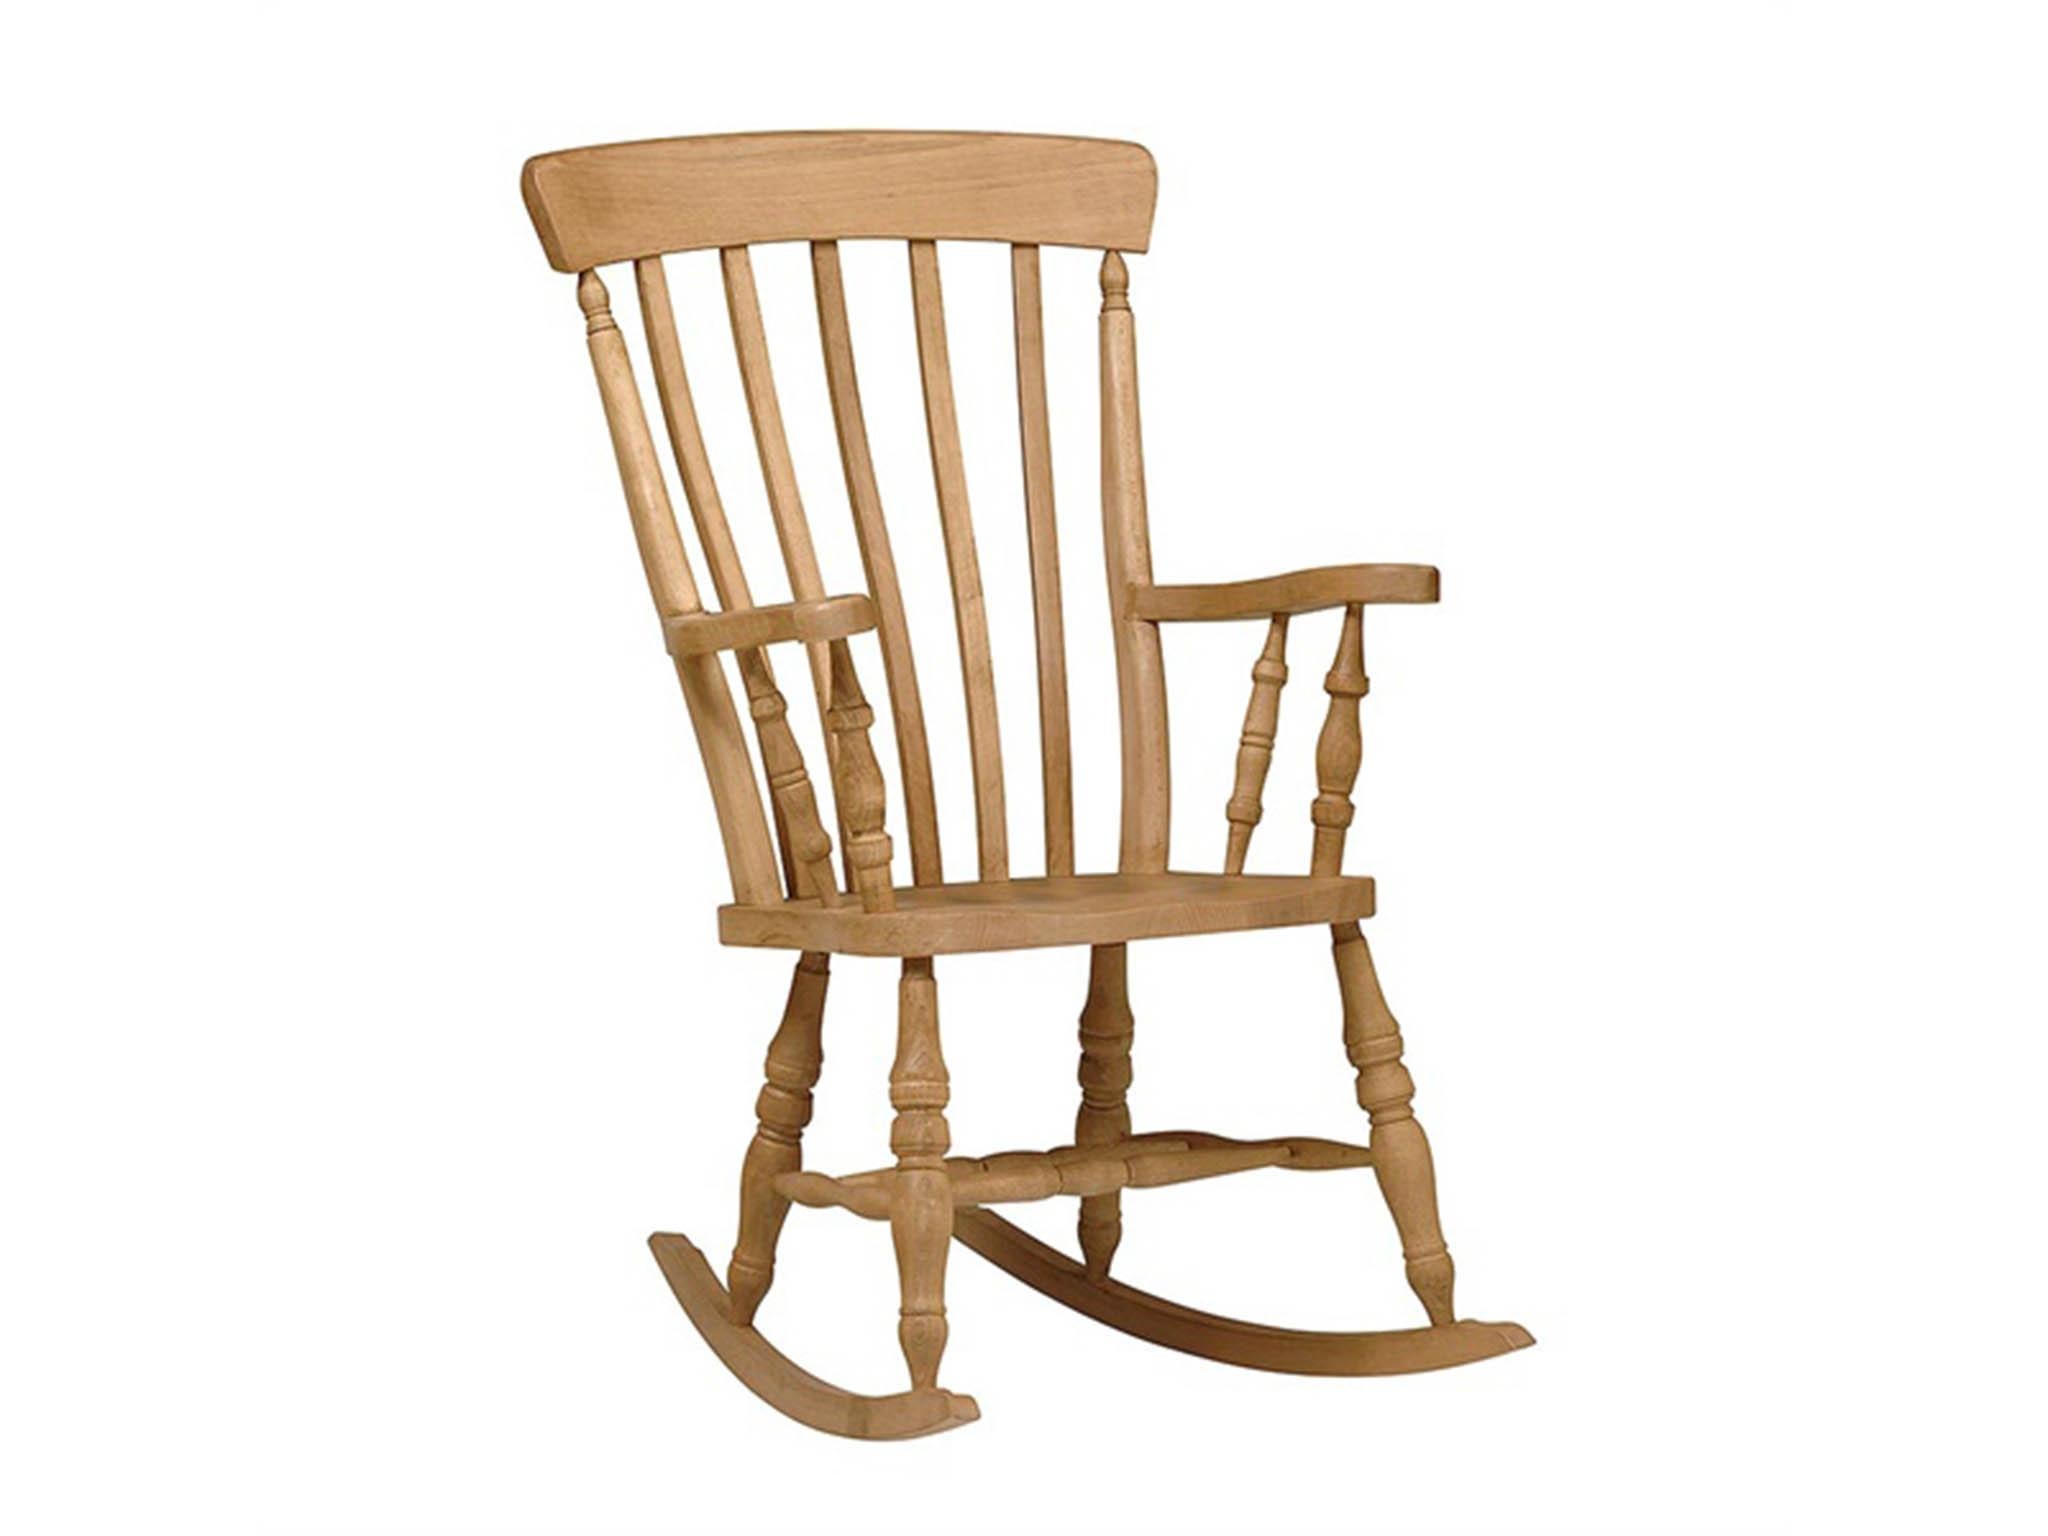 Seeinglooking: White Wooden Rocking Chair John Lewis